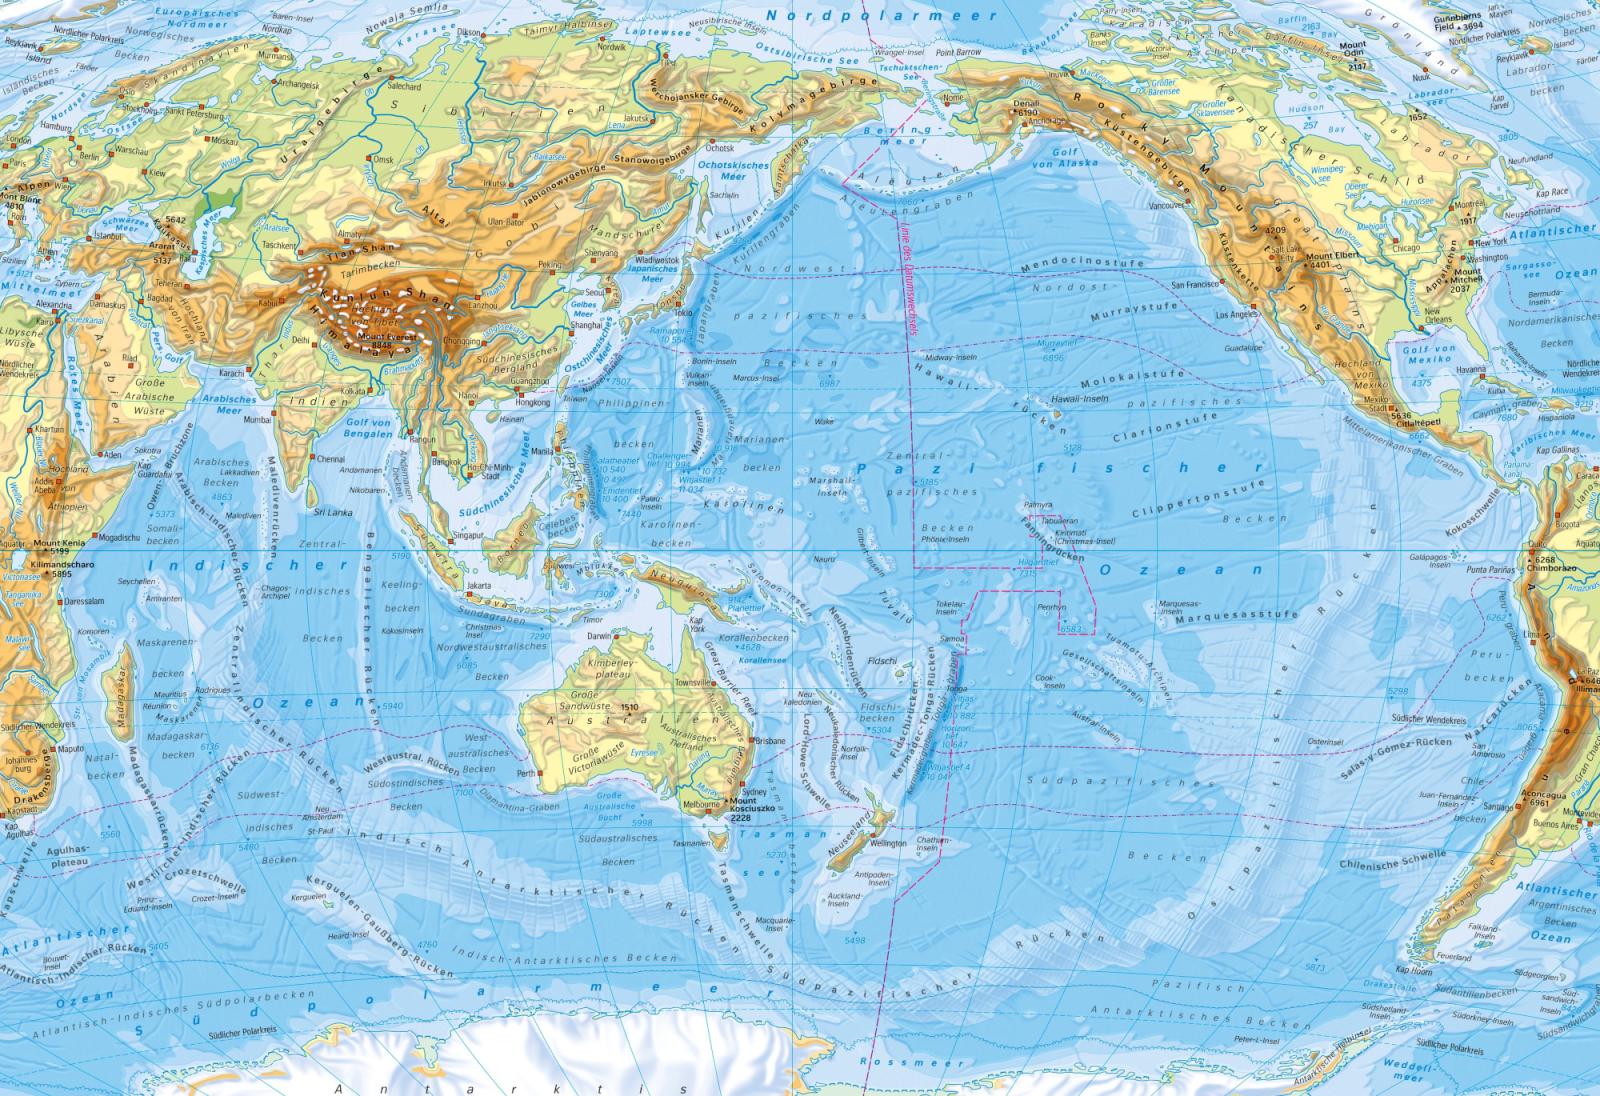 Продолжи тихий океан. Тихий океан на карте. Острова Тихого океана на карте. Т̊и̊х̊и̊й̊ о̊к̊е̊а̊н̊ н̊а̊ к̊а̊р̊р̊ т̊т̊е̊. Карта Тихого океана географическая.